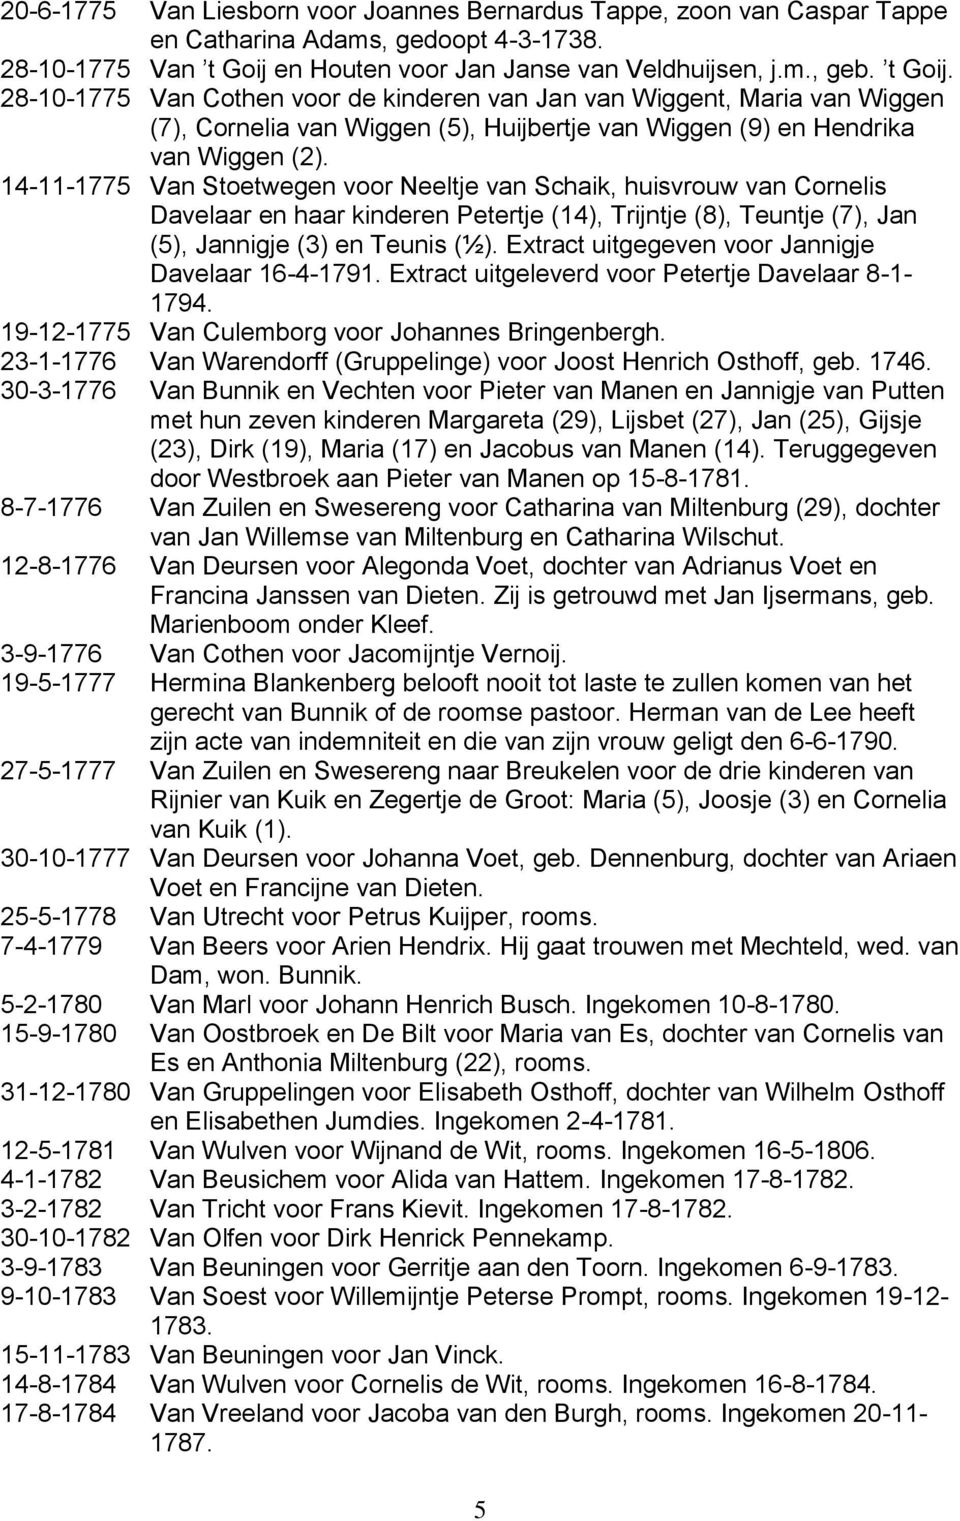 28-10-1775 Van Cothen voor de kinderen van Jan van Wiggent, Maria van Wiggen (7), Cornelia van Wiggen (5), Huijbertje van Wiggen (9) en Hendrika van Wiggen (2).